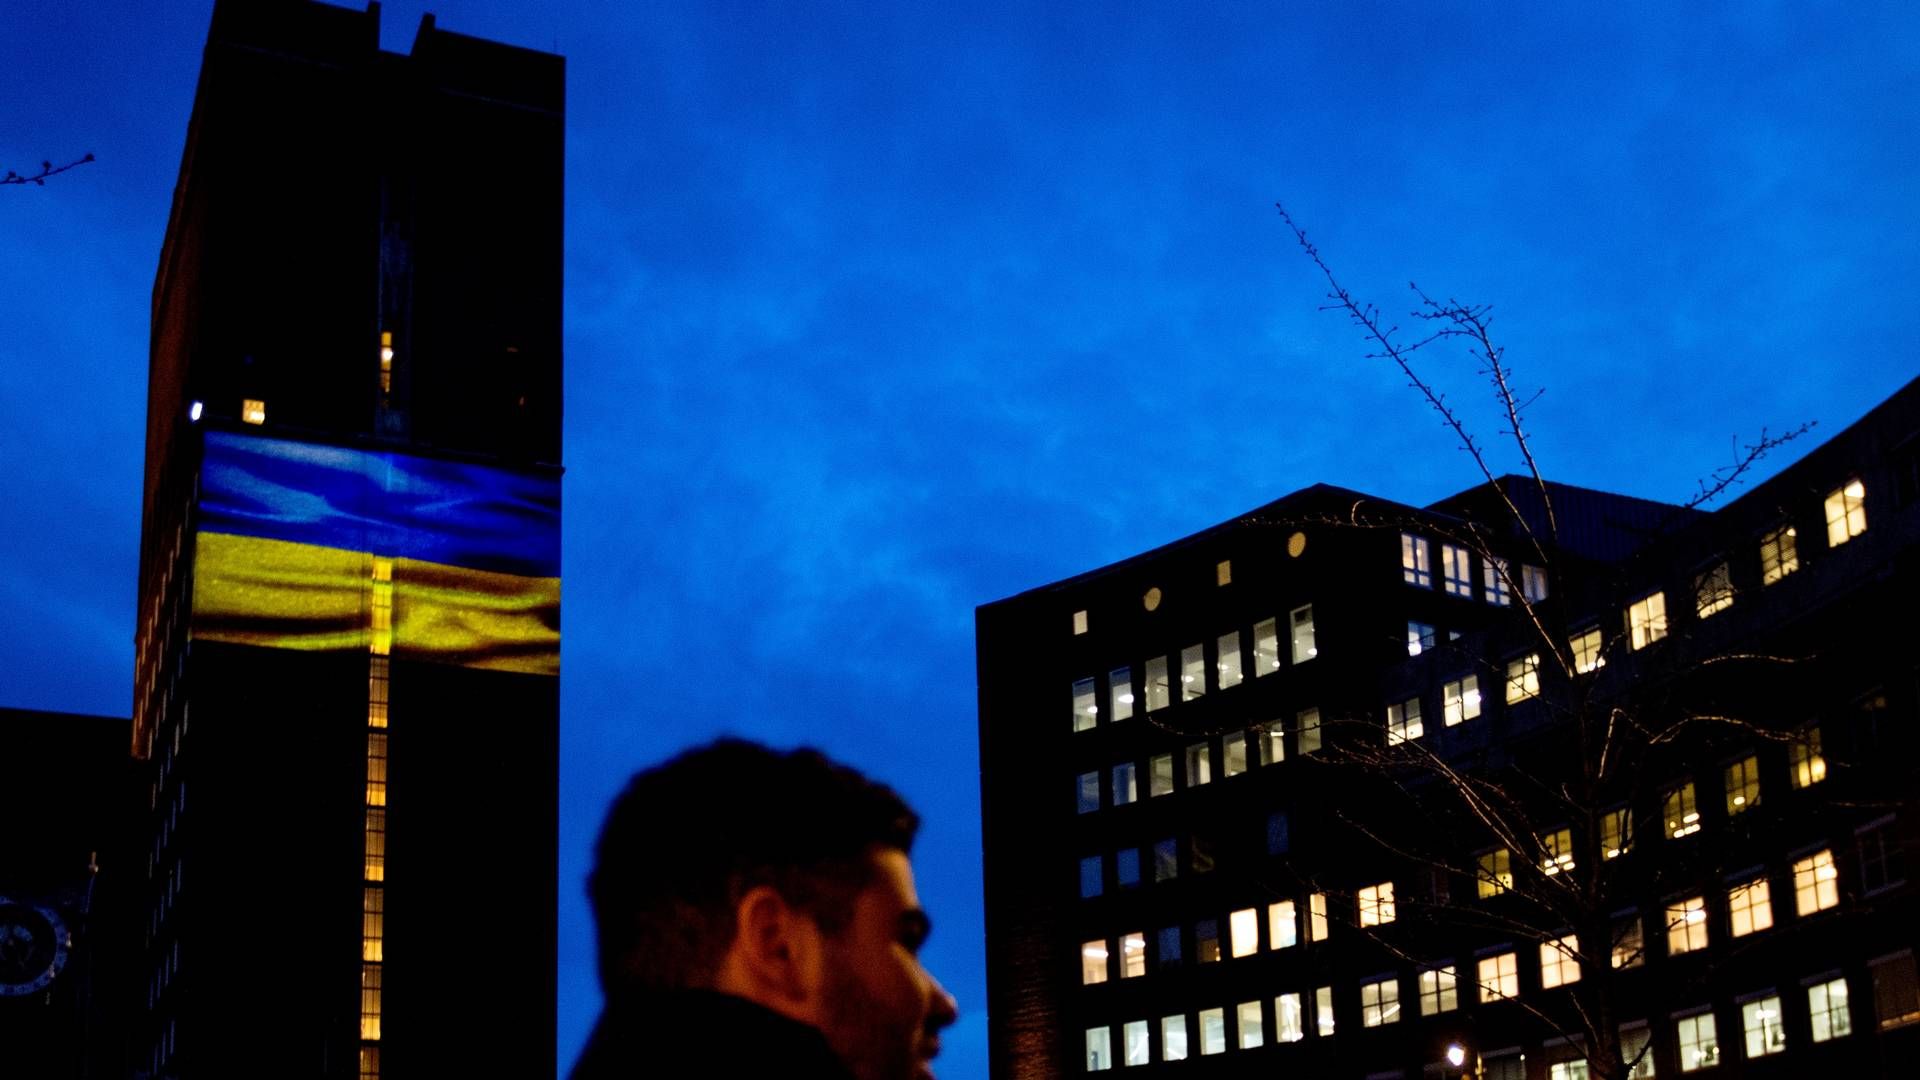 FARGET: Her er Oslo rådhus lyssatt med Ukrainas blå og gule flagg, som i likhet med mange andre bygg verden over har ønsket å gjøre dette for å støtte landet etter den russiske invasjonen. Krigen som pågår for fullt på bakken skaper også store implikasjoner for verdensøkonomien, som Malling & Co skriver om i sin siste rapport. | Foto: Javad Parsa, NTB